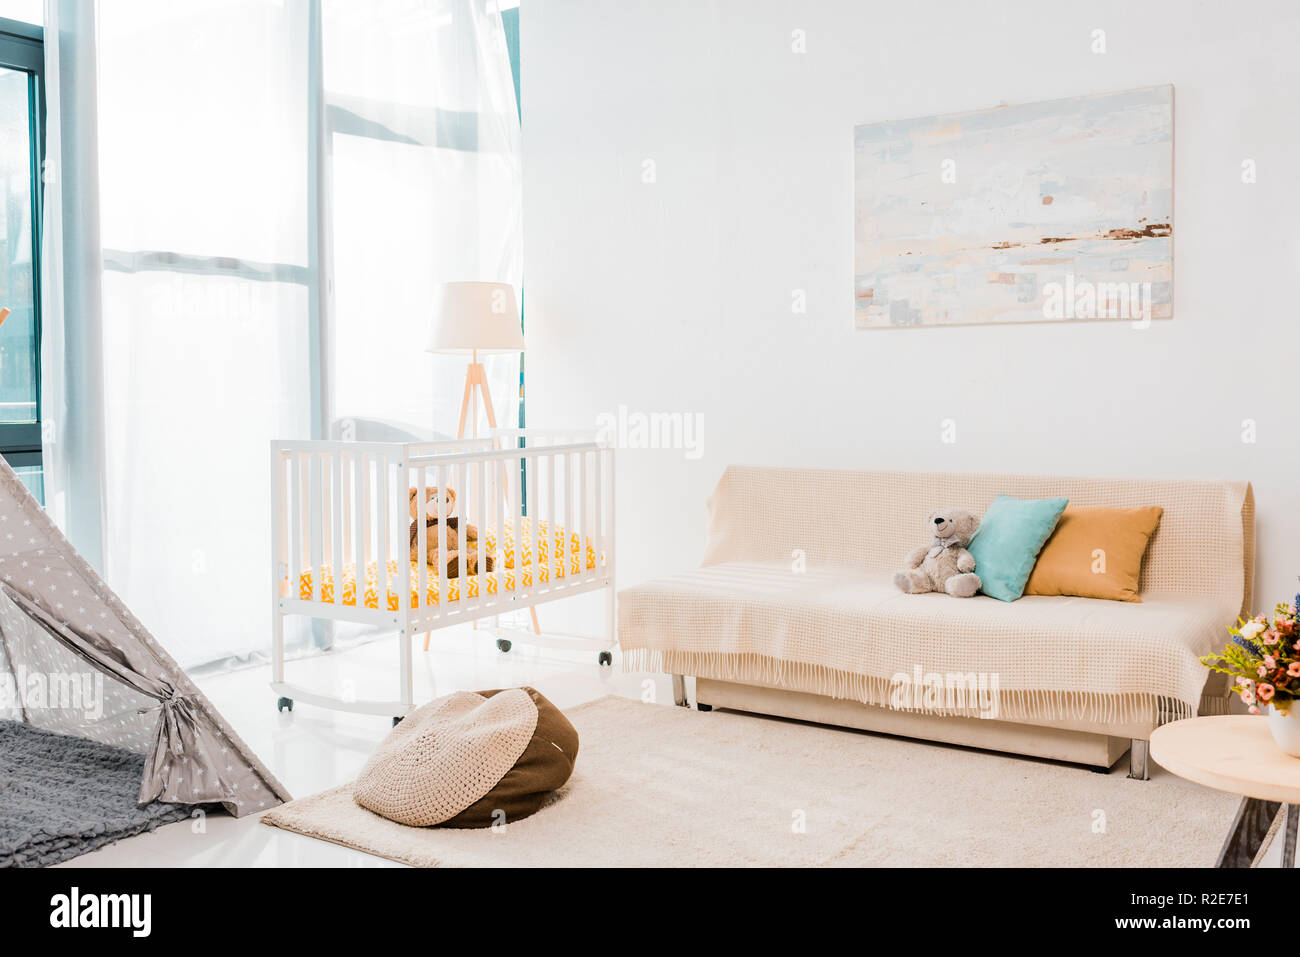 Modernes Design der Krankenpflege Zimmer mit Kinderbett Stockfoto